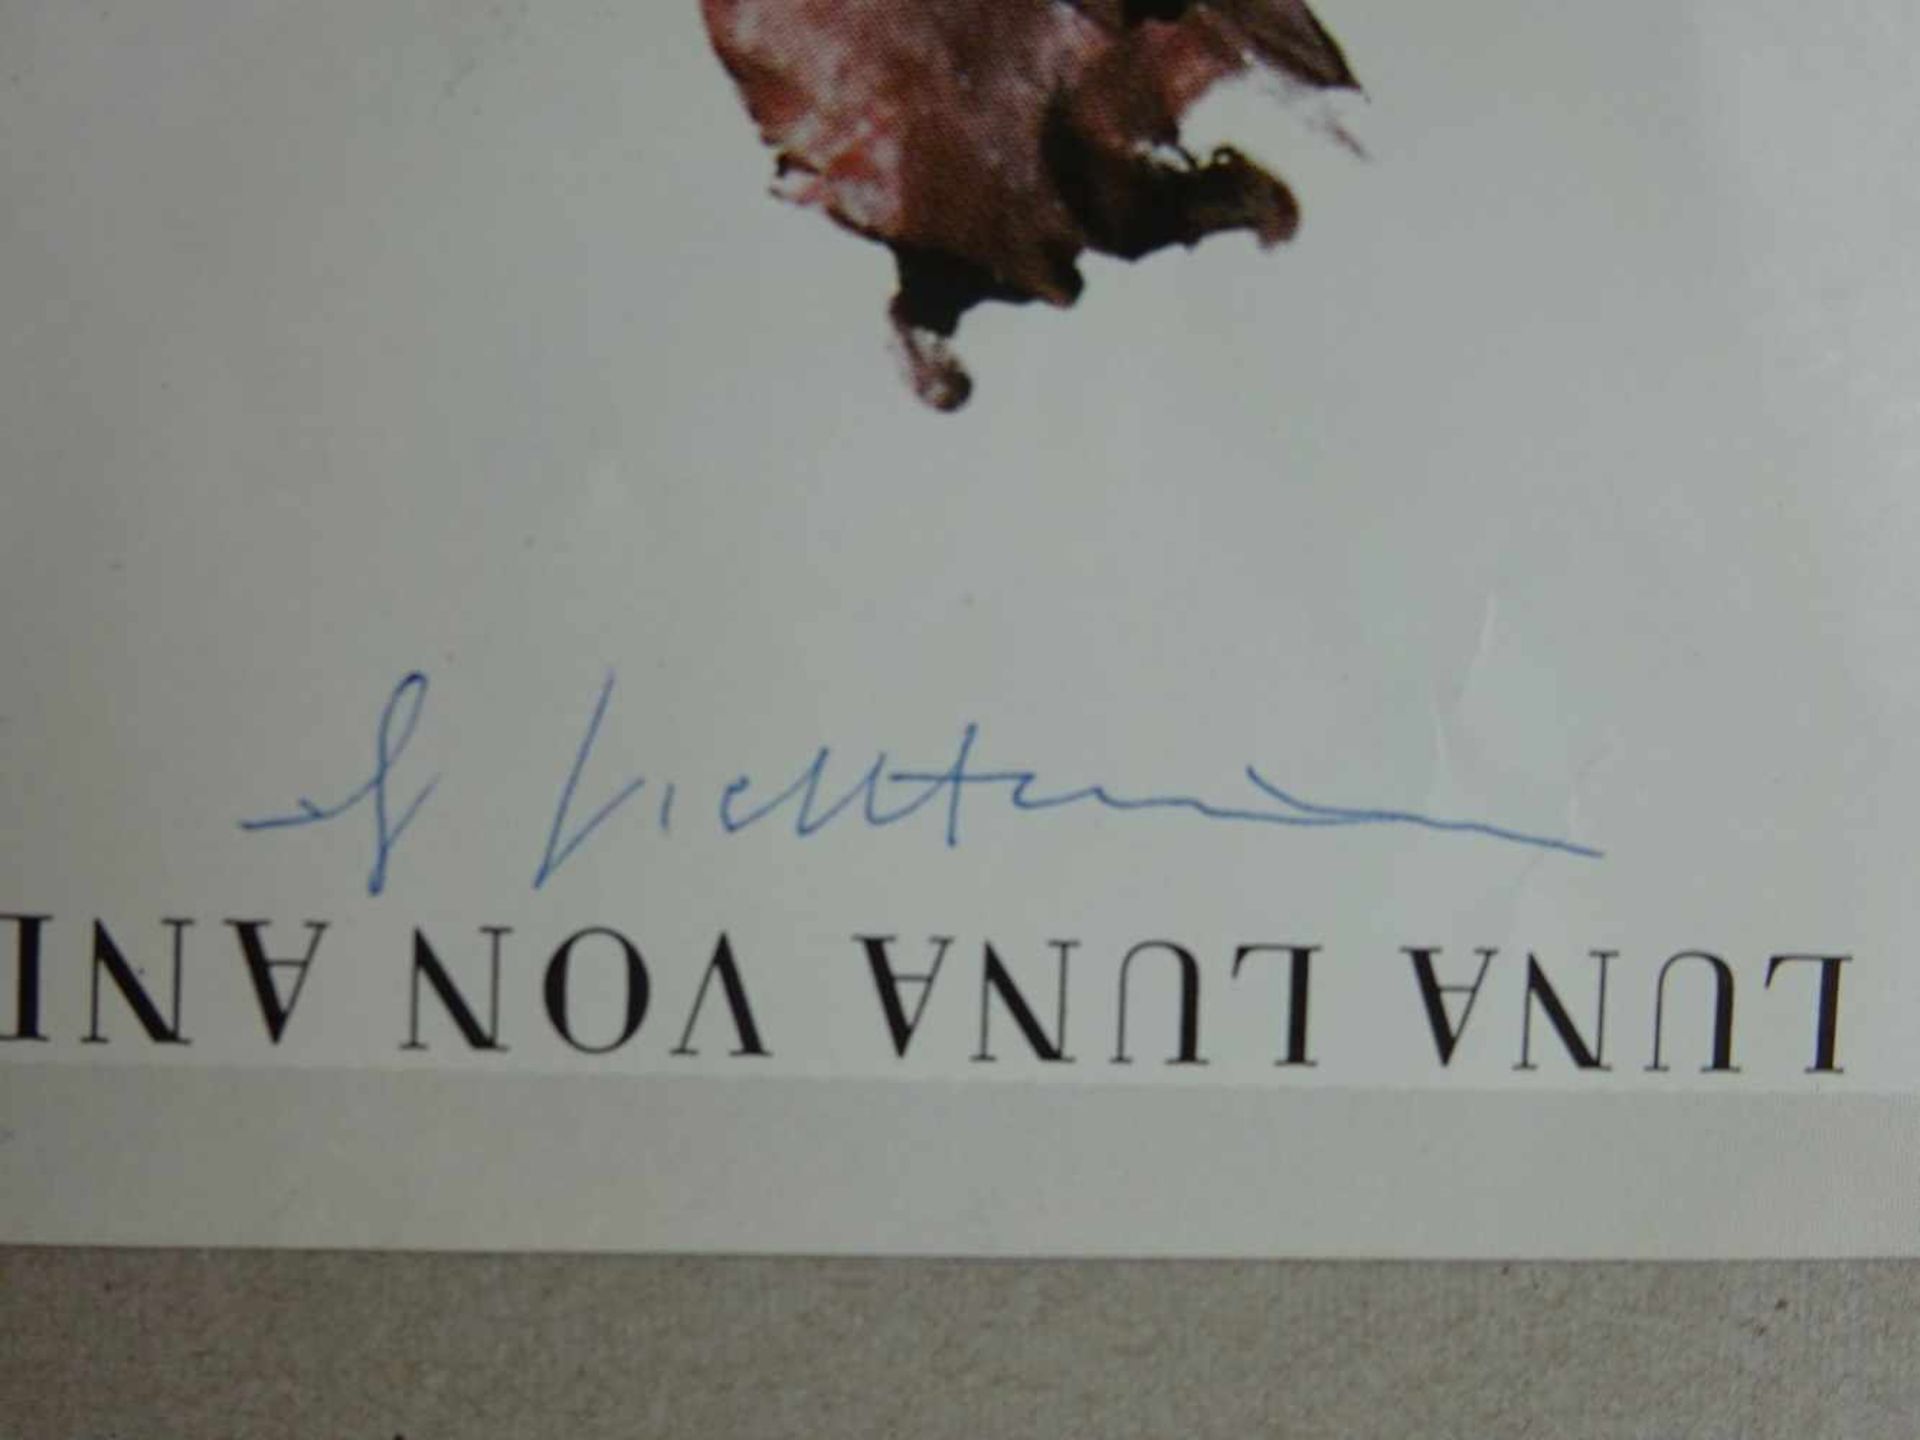 Lichtenstein, Roy(Manhattan 1923 - 1997). Luna Luna. Offsetplakat von 1987. Signiert. 63 x 42,5 cm. - Bild 3 aus 4